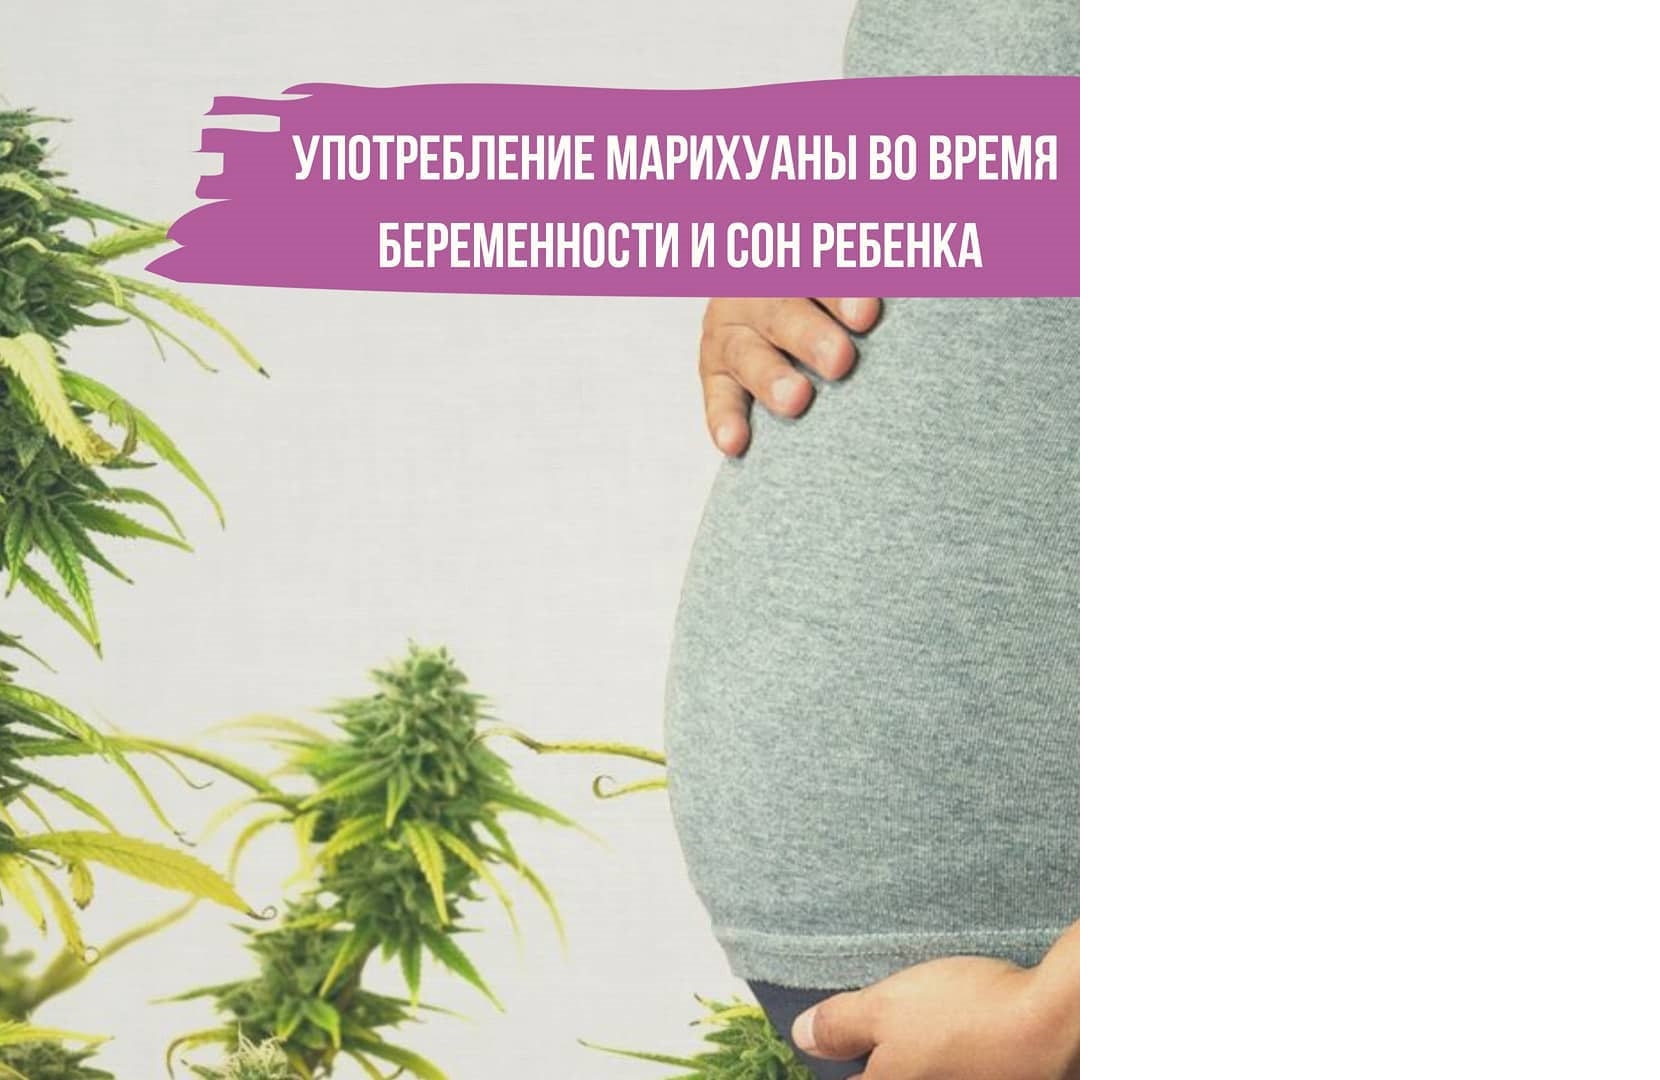 Употребление марихуаны до беременности ногти с рисунком конопли